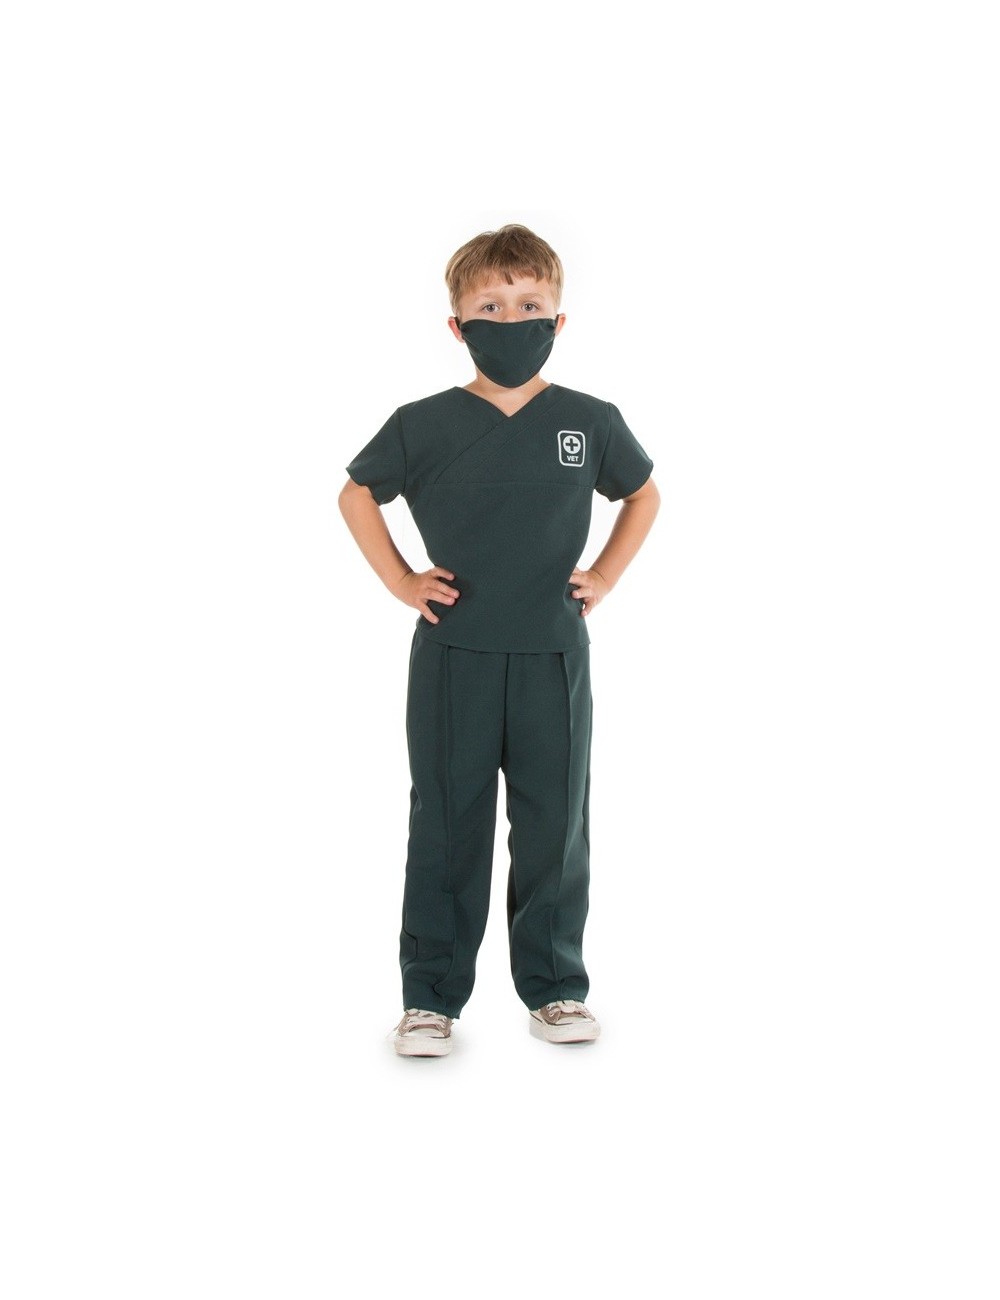 Costum Medic veterinar copii 3 - 7 ani